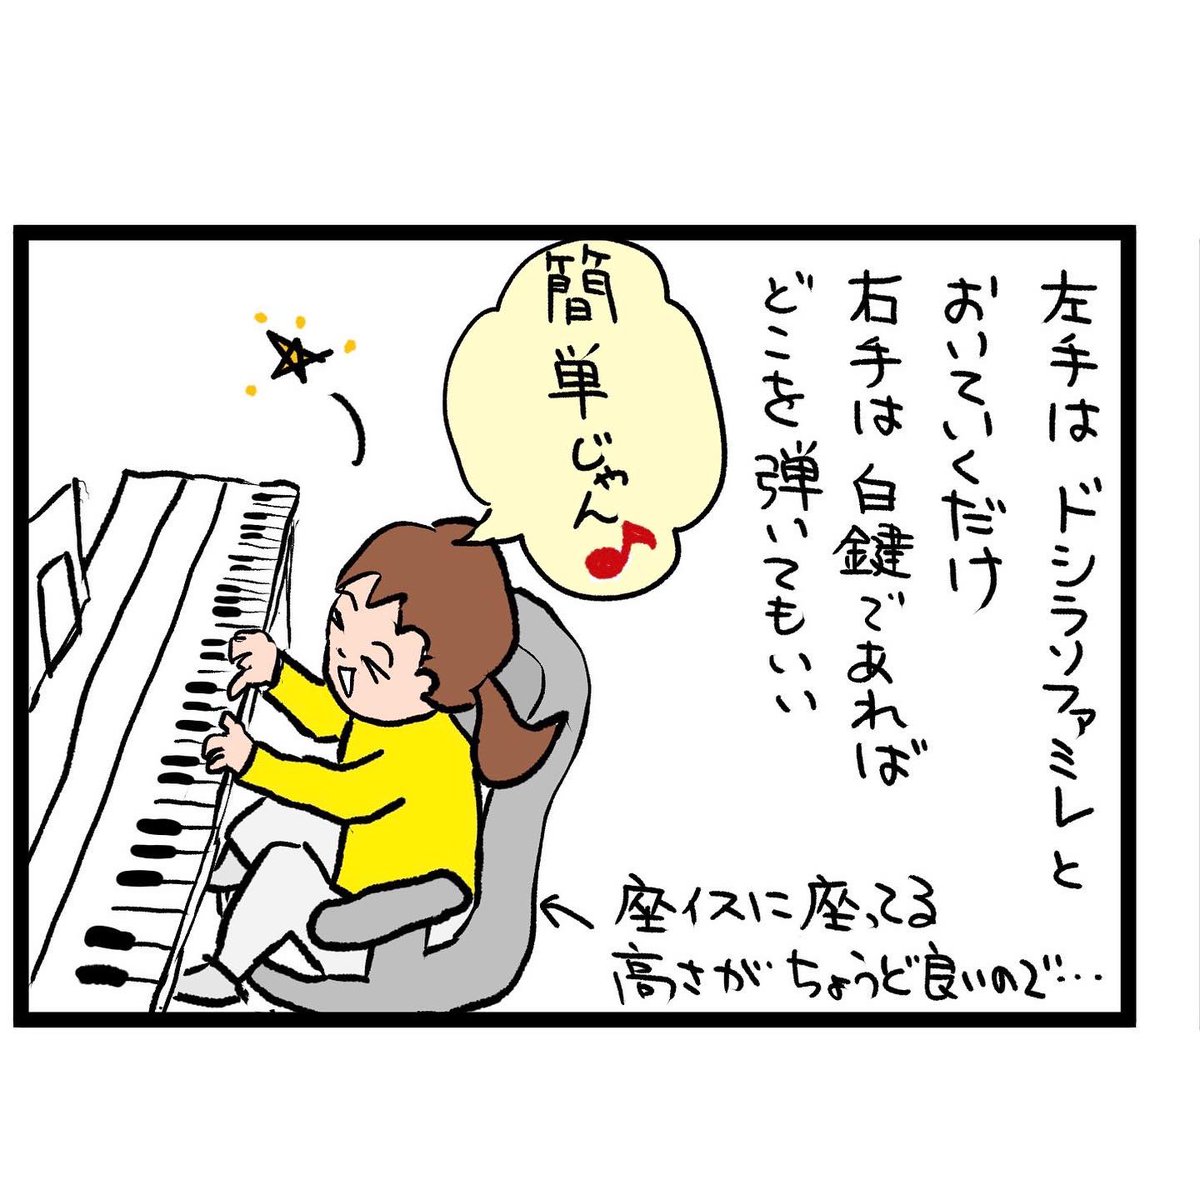 #四コマ漫画
#ピアノ
ピアノ初心者 